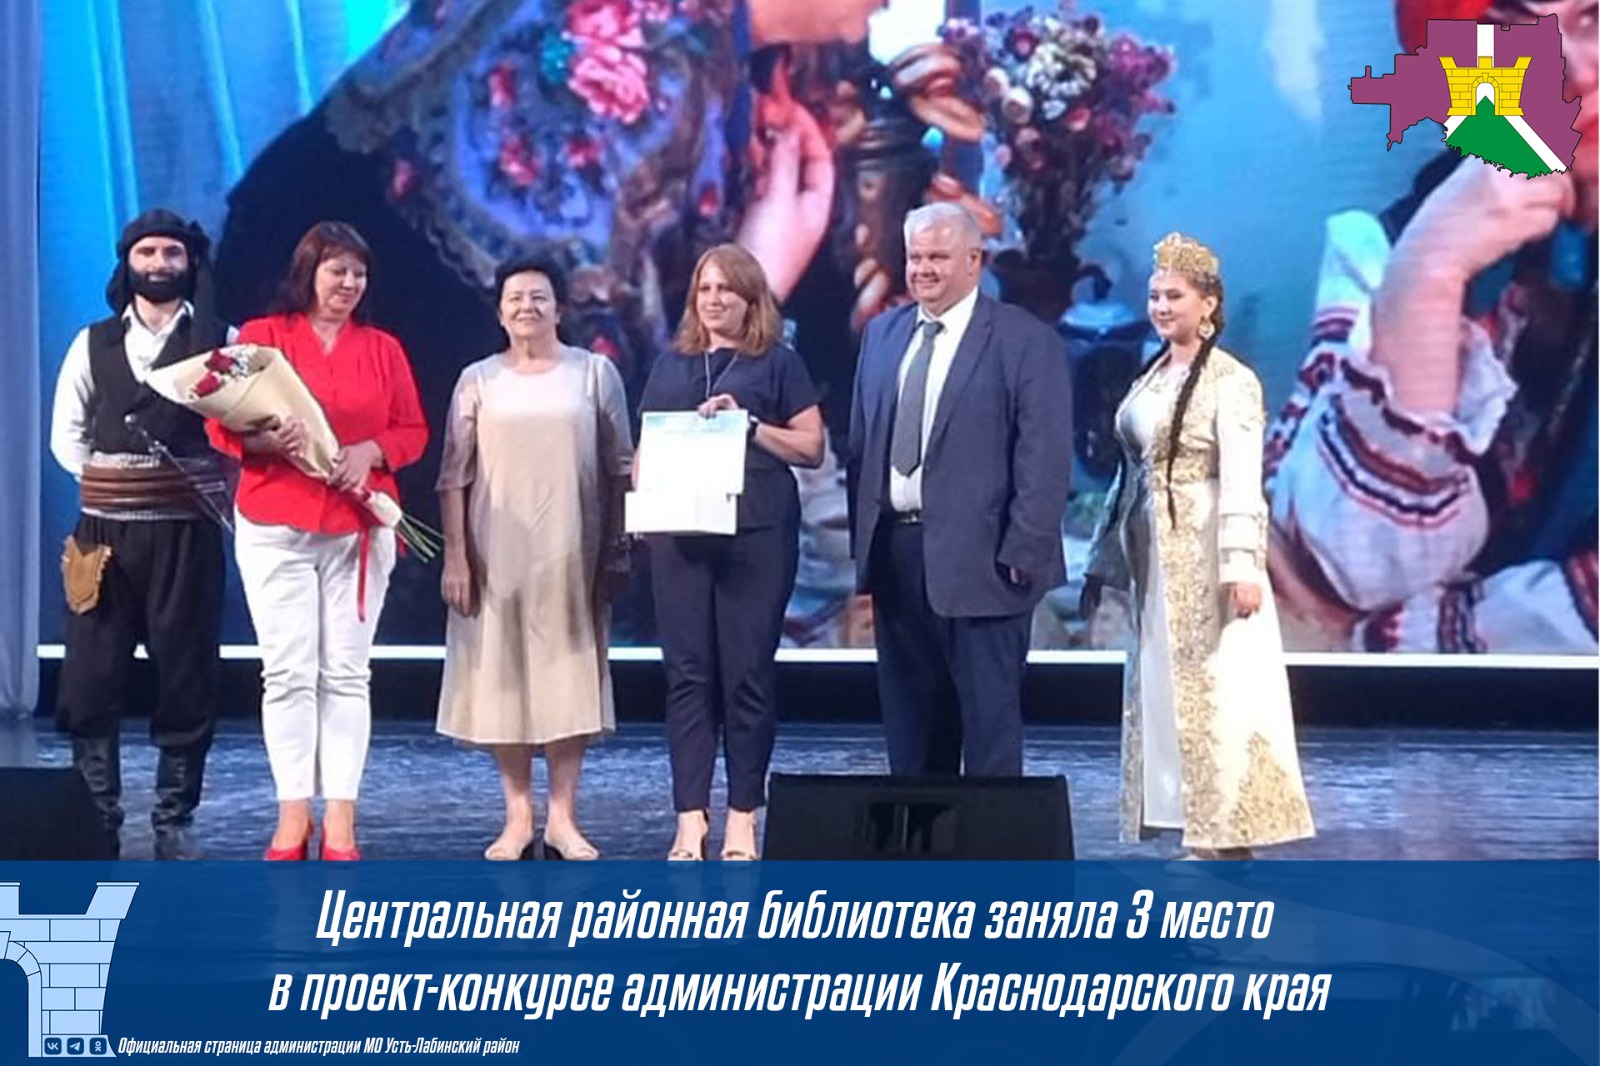 Центральная районная библиотека заняла 3 место в проект - конкурсе администрации Краснодарского края